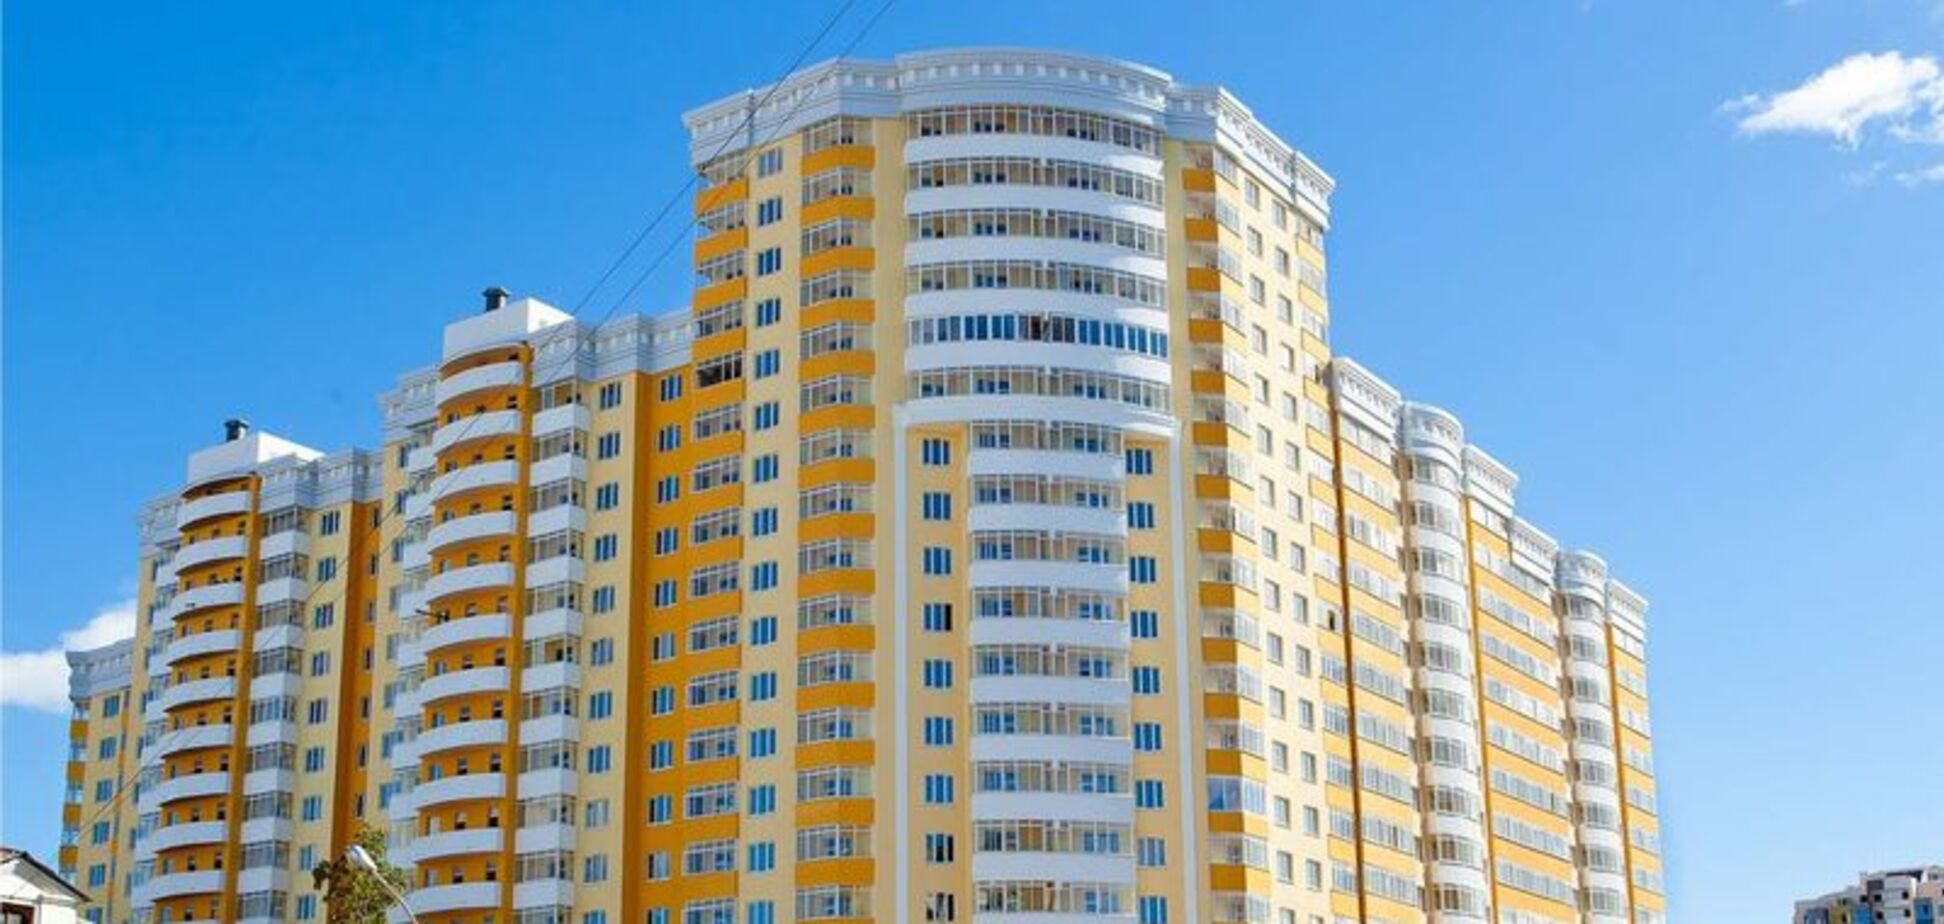 Ціни на нерухомість в Україні: з'явився прогноз на найближчі роки